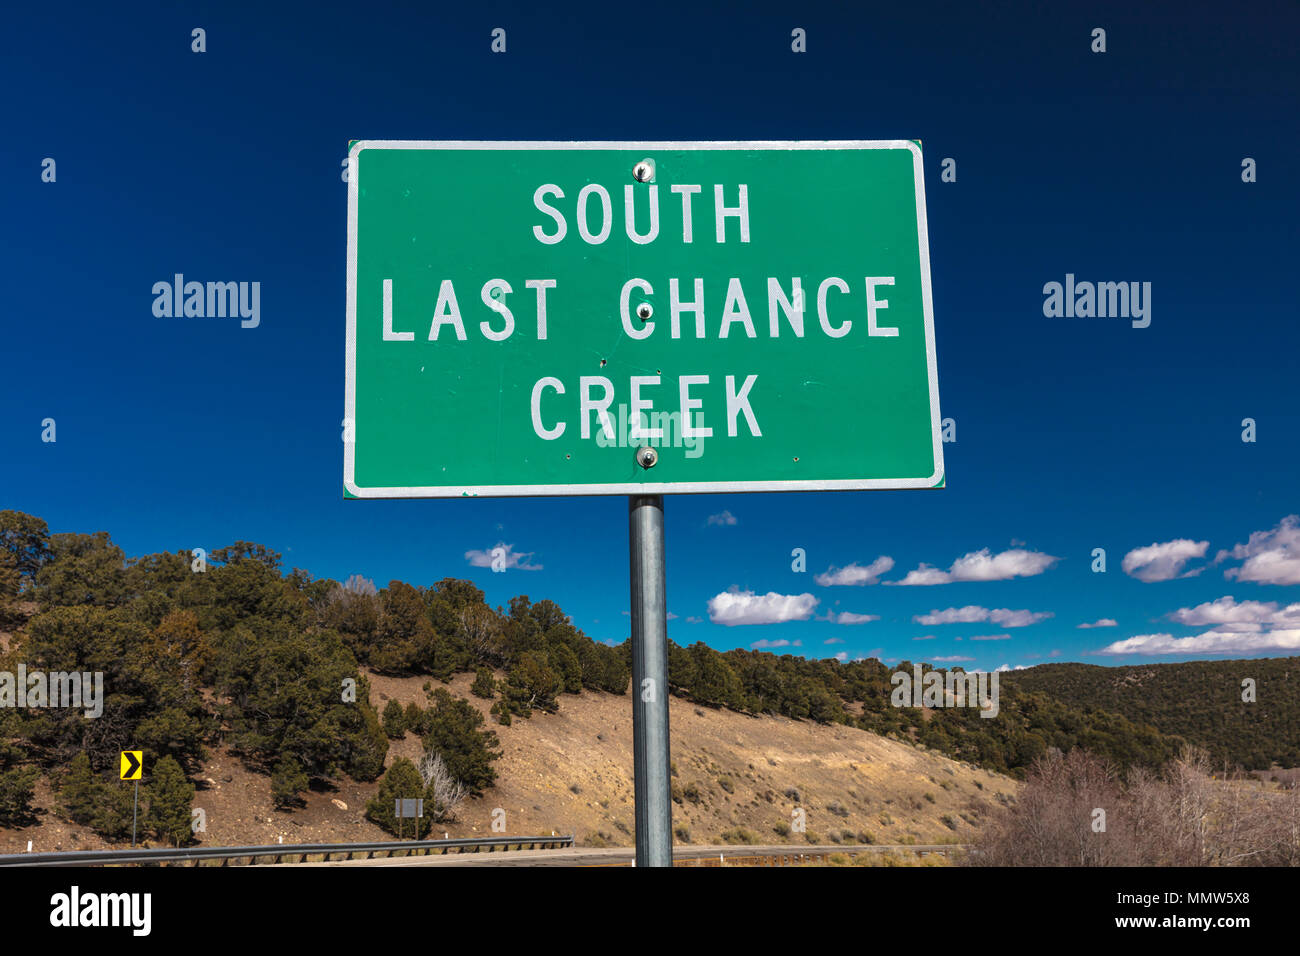 Oktober 2017 - American entlang von Straßen - zeigt nach Süden Letzte Chance Creek Stockfoto